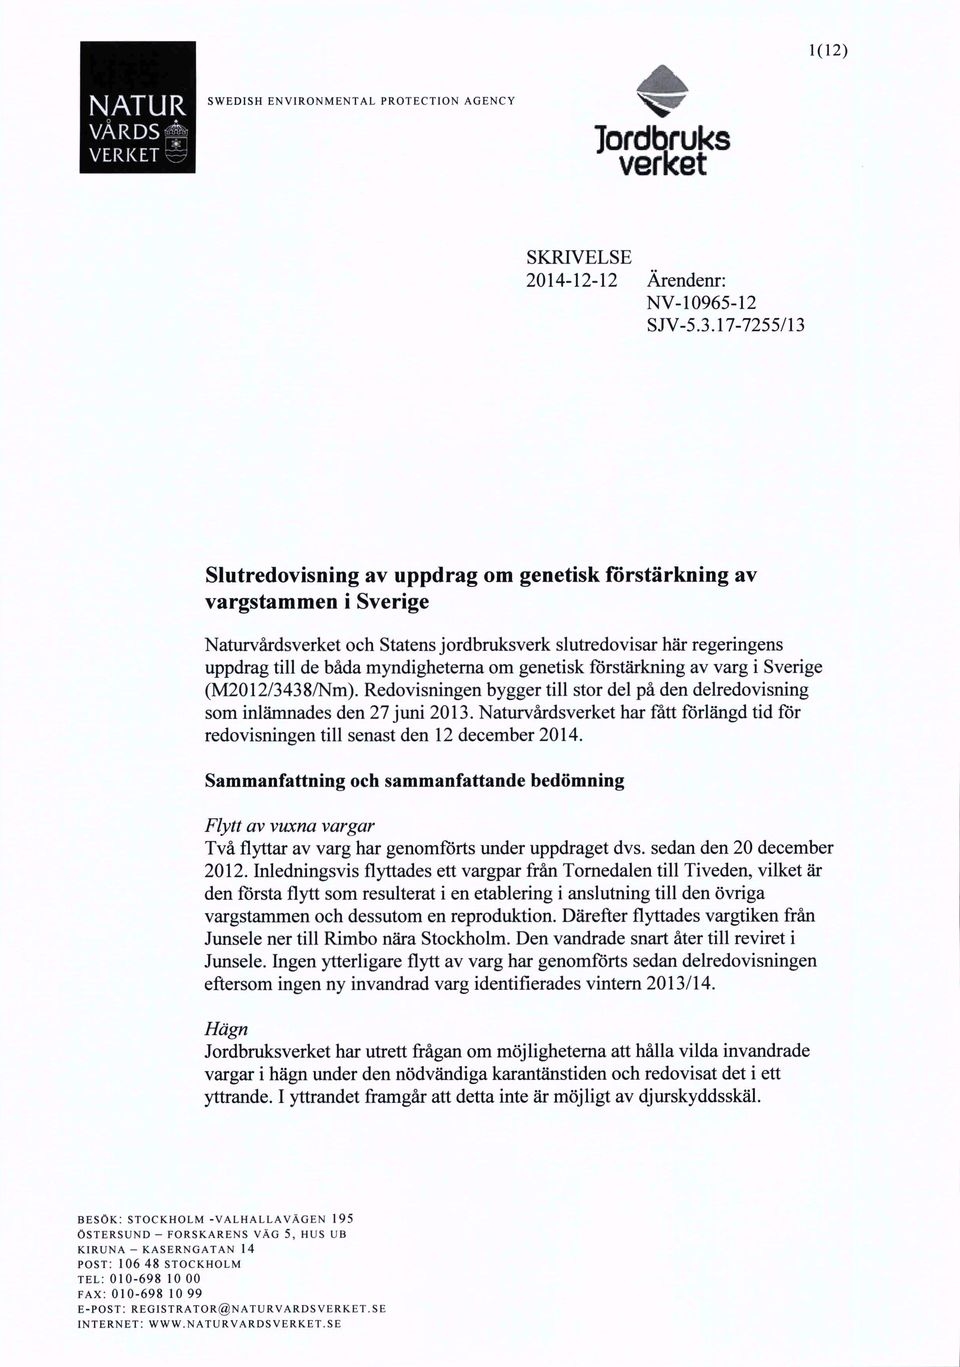 genetisk förstärkning av varg i Sverige (M2012/3438/Nm). Redovisningen bygger till stor del på den delredovisning som inlämnades den 27 juni 2013.